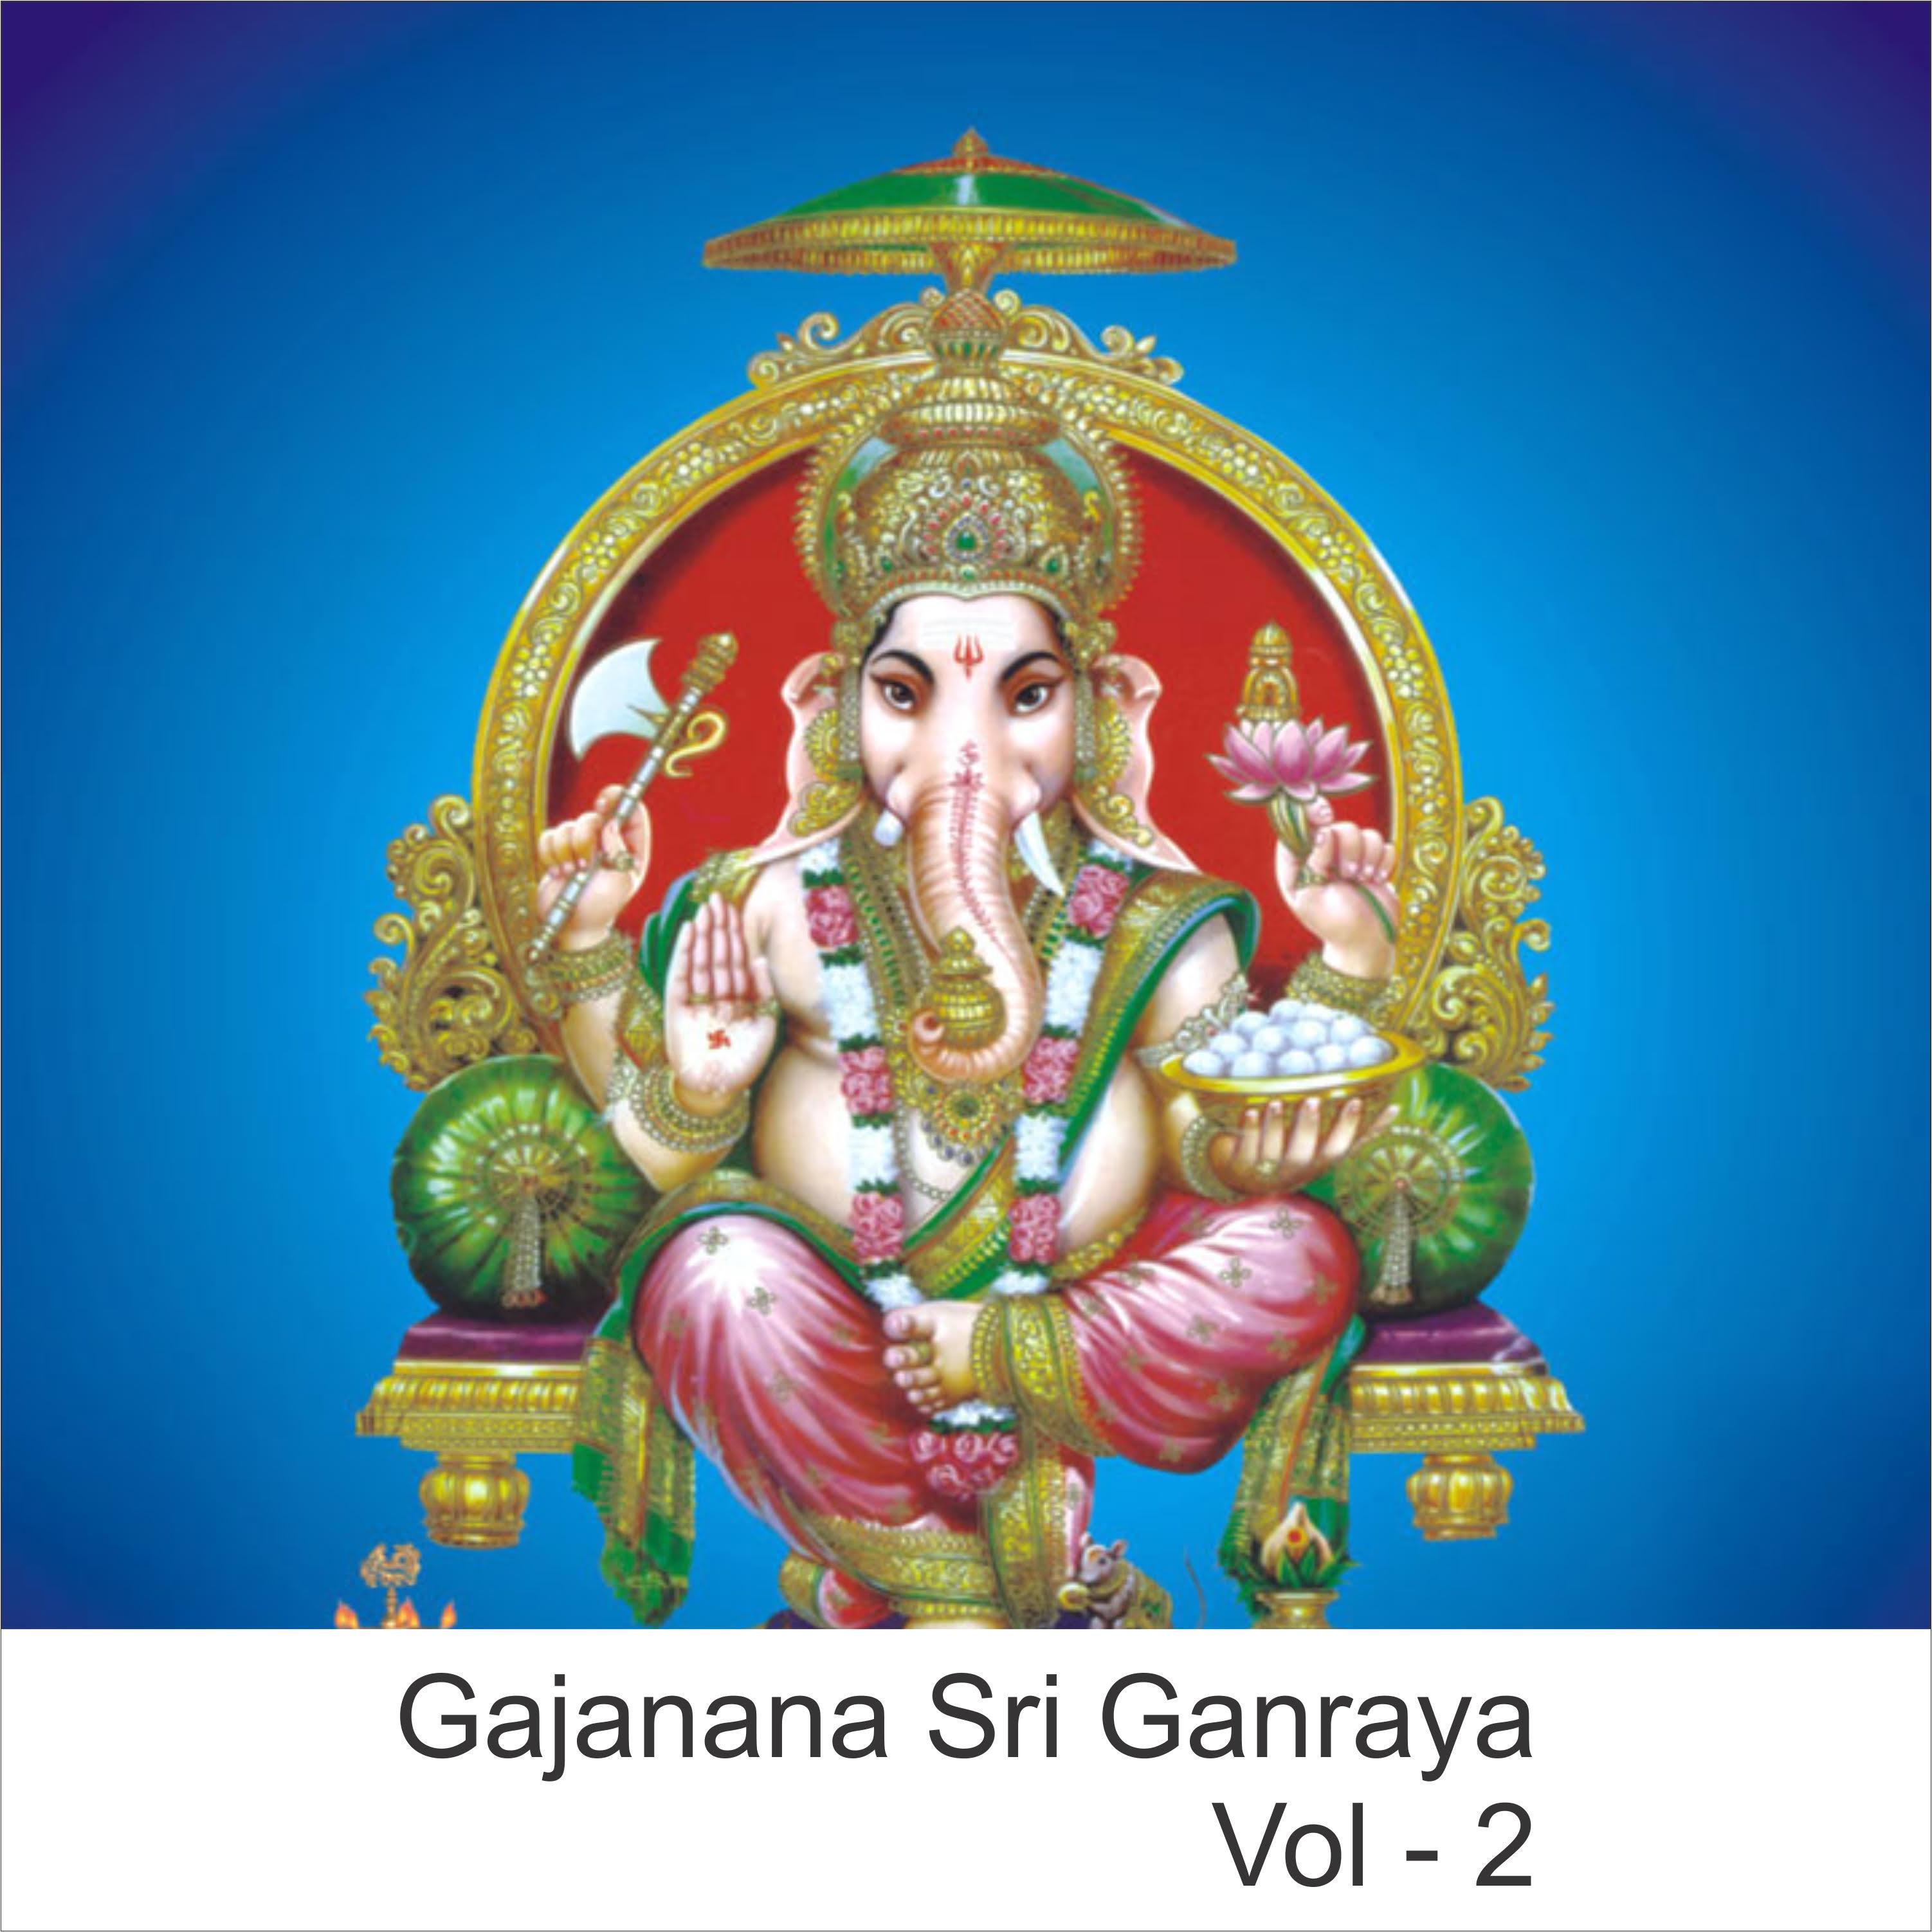 Gajanana Sri Ganraya, Vol. 2